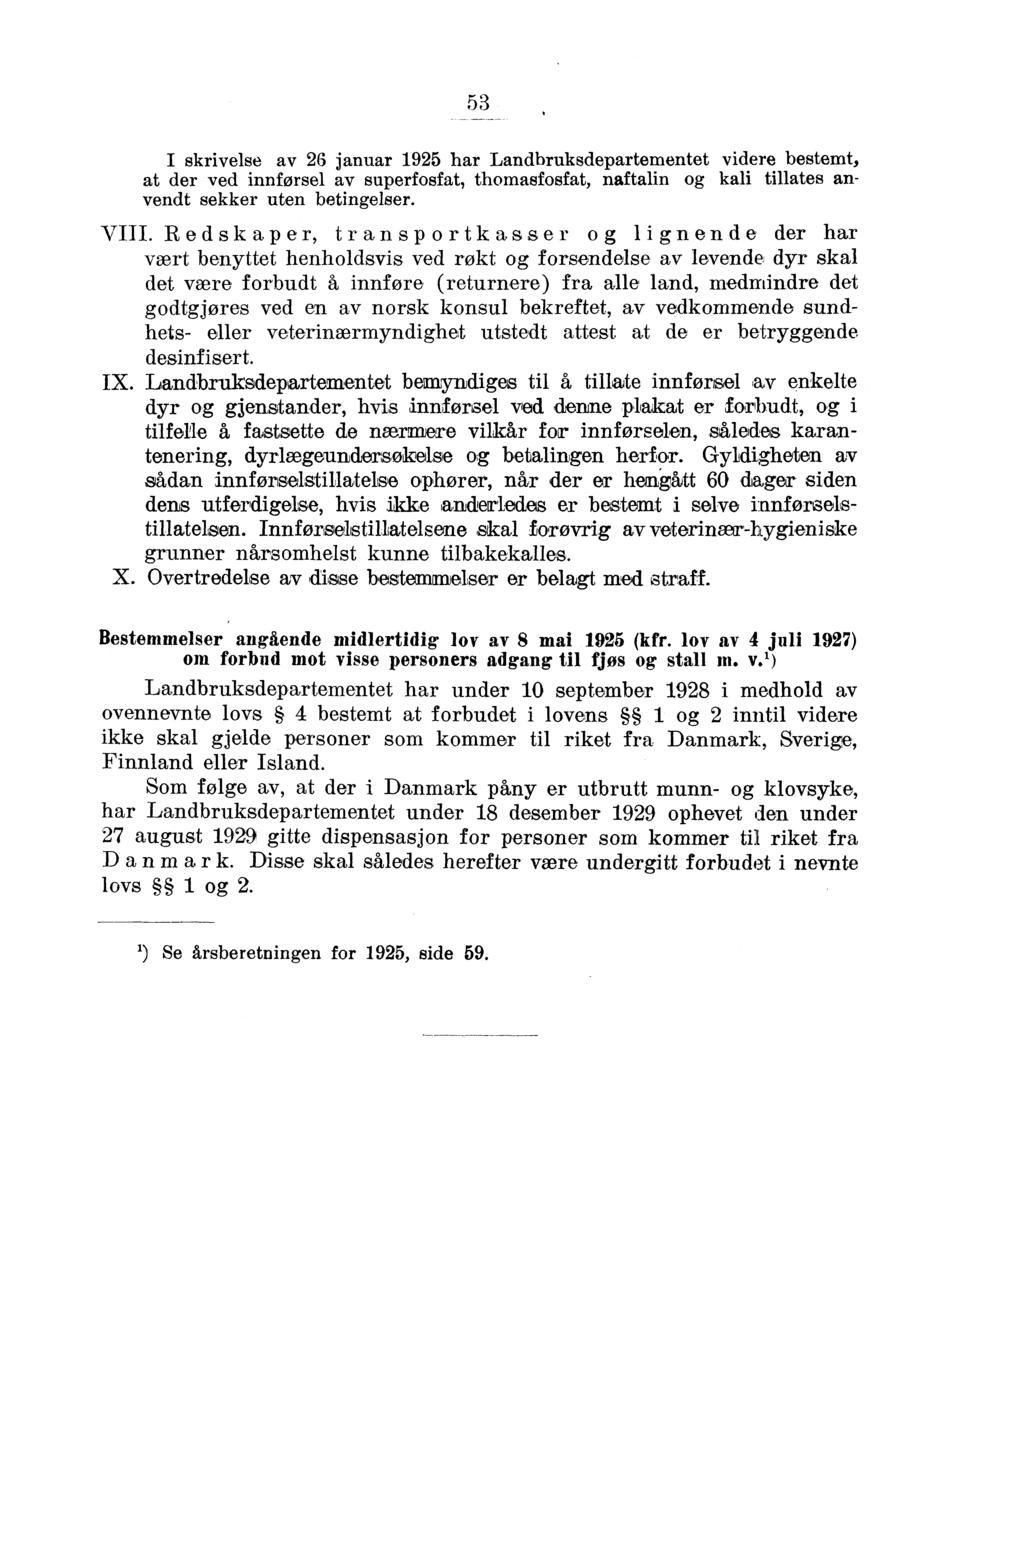 5 I skrivelse av 6 januar 95 har Landbruksdepartementet videre bestemt, at der ved innførsel av superfsfat, thmasfsfat, naftalin kali tillates anvendt sekker uten betinelser. VIII.